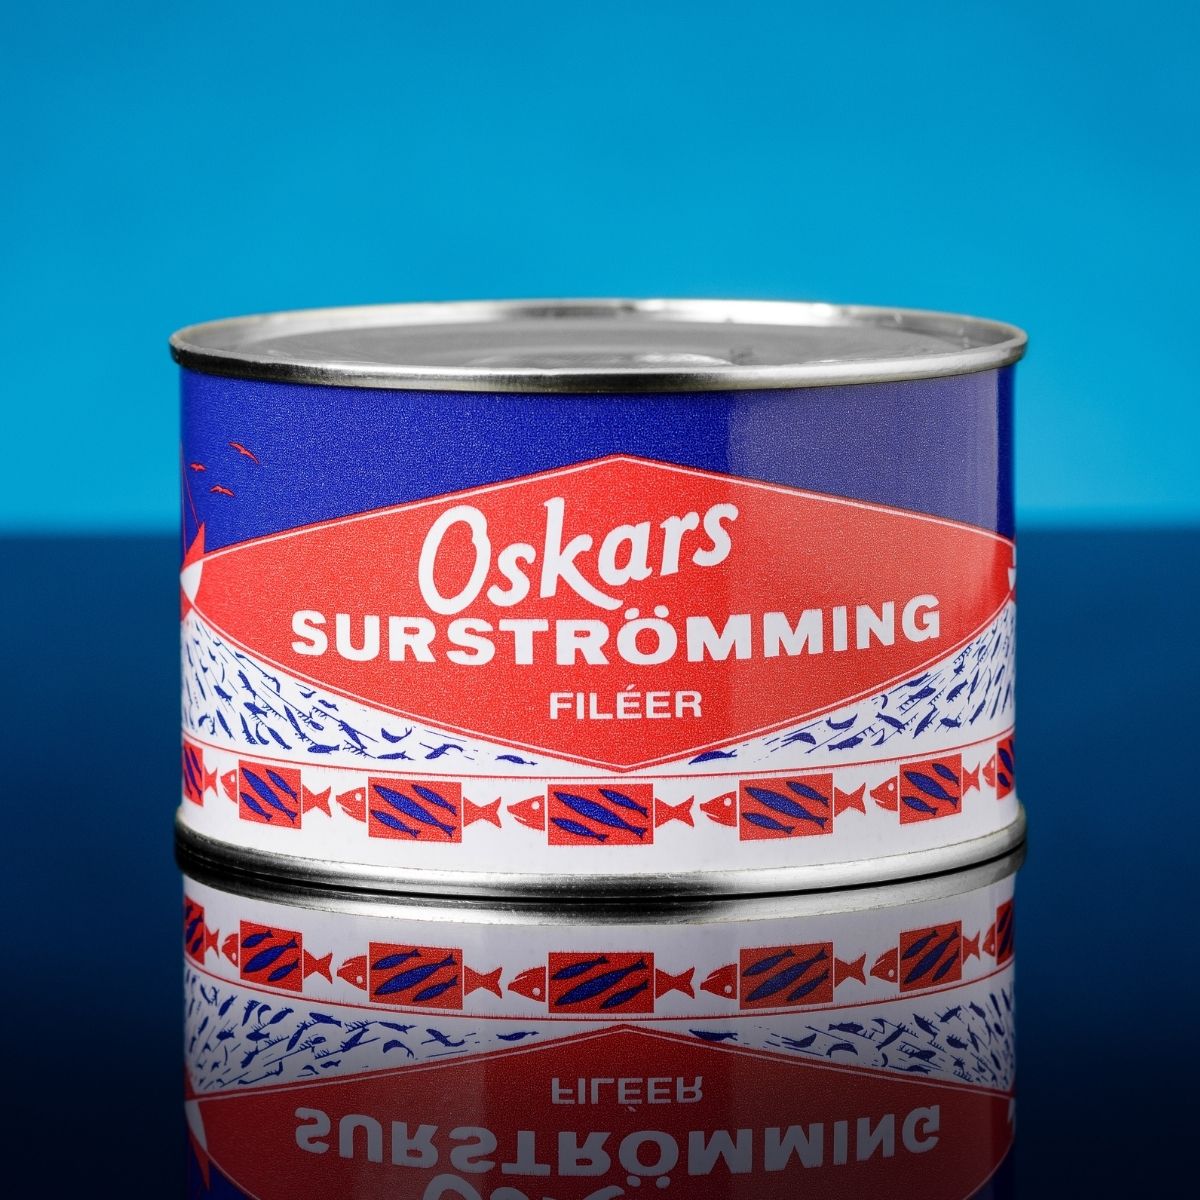 Oskars Surströmming Filleted 300 g